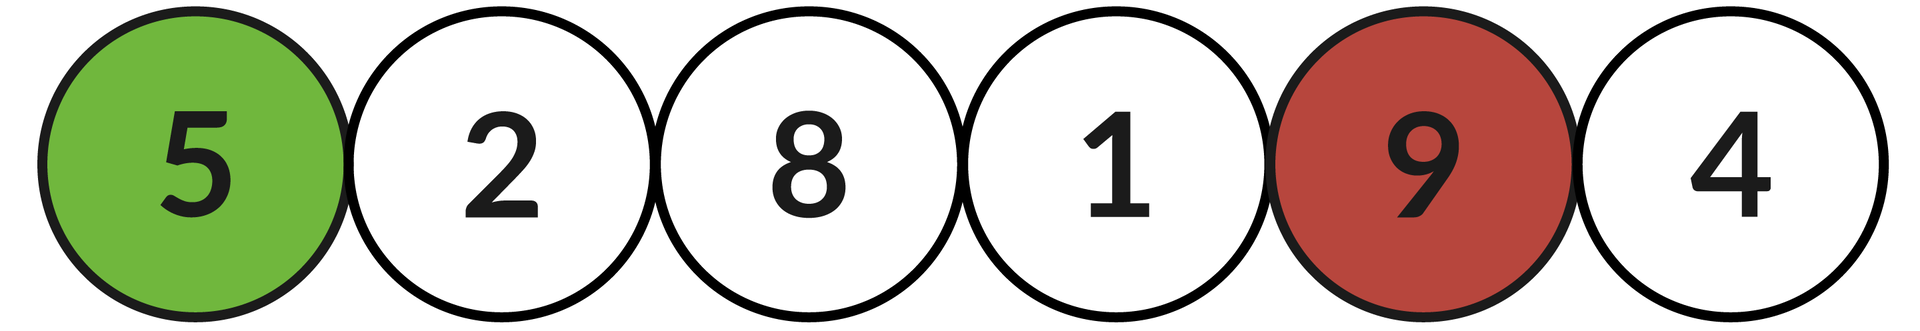 Ilustracja przedstawia sześć okręgów z liczbami: 5, 2, 8, 1, 9, 4.  Zielonym kolorem zaznaczono okrąg z liczbą: 5, a kolorem czerwonym z liczbą: 9.